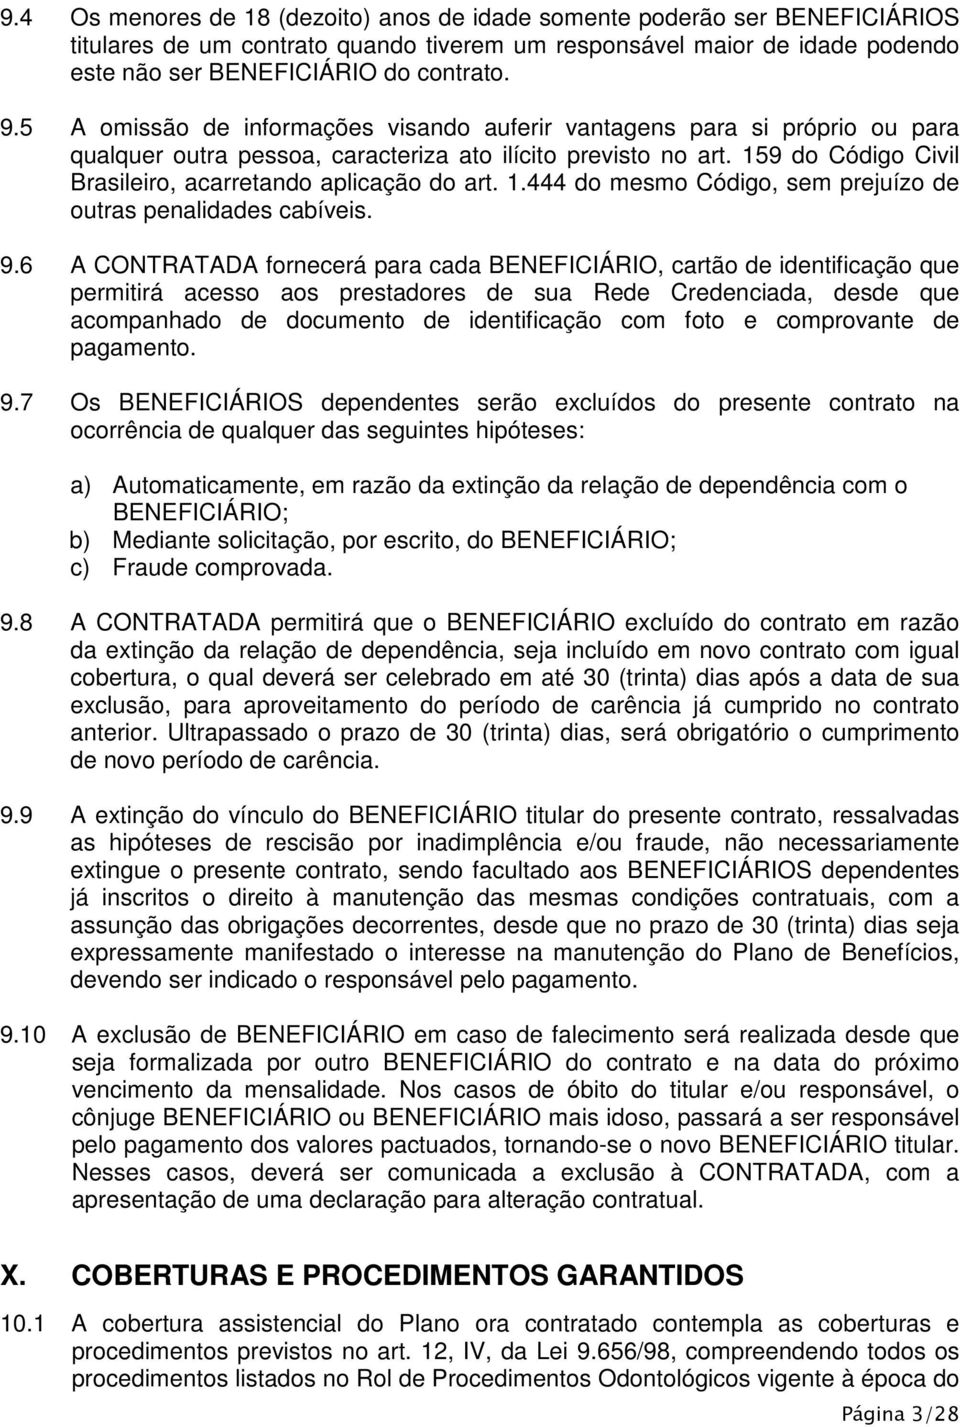 159 do Código Civil Brasileiro, acarretando aplicação do art. 1.444 do mesmo Código, sem prejuízo de outras penalidades cabíveis. 9.